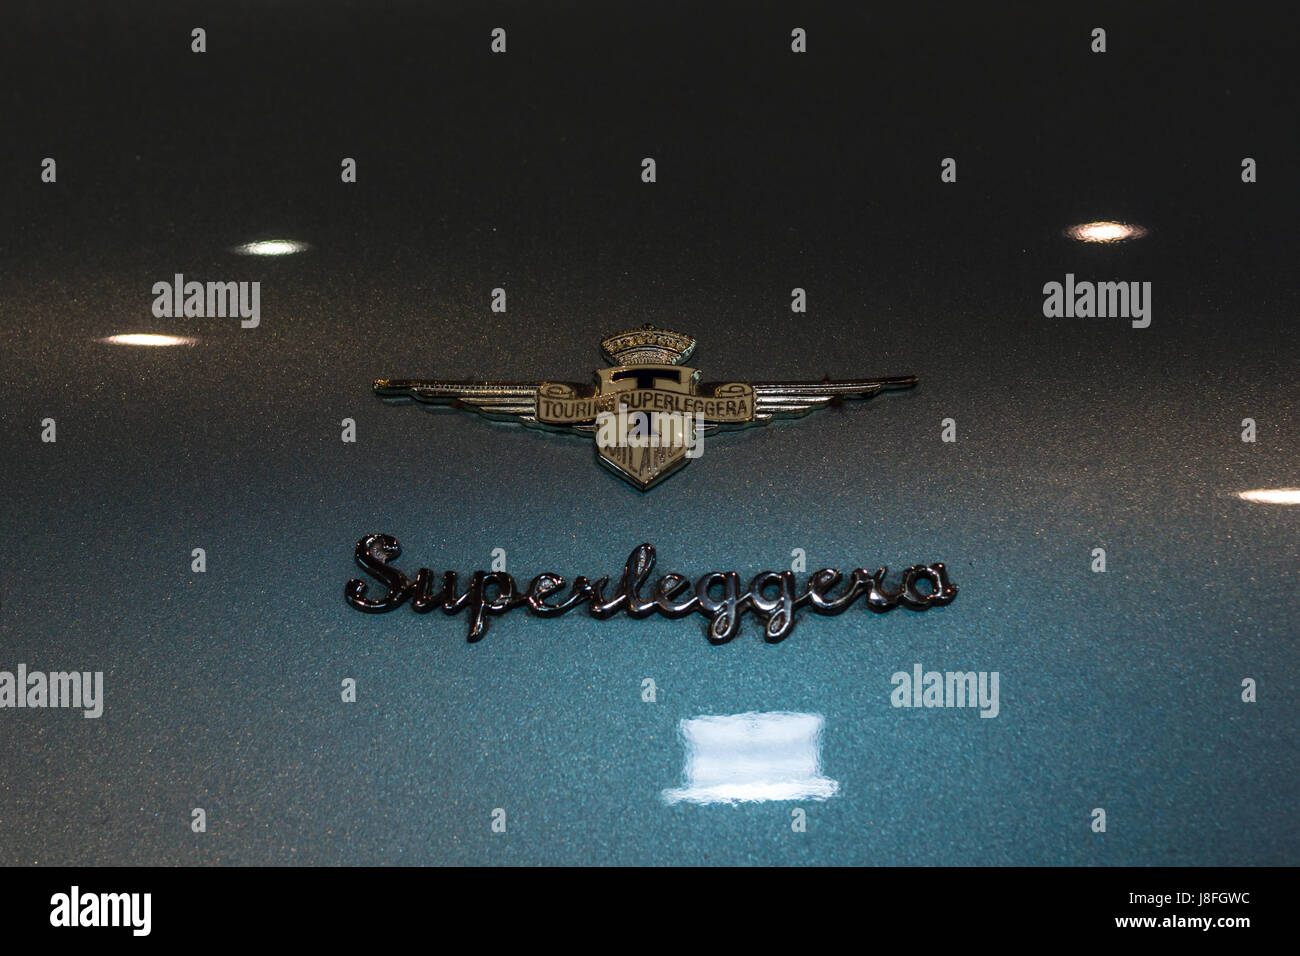 STUTTGART, ALLEMAGNE - Mars 04, 2017 : emblème Superleggera Pinin sur Lamborghini 400 GT, libre. Plus grand d'Europe Exposition de voitures classiques Banque D'Images